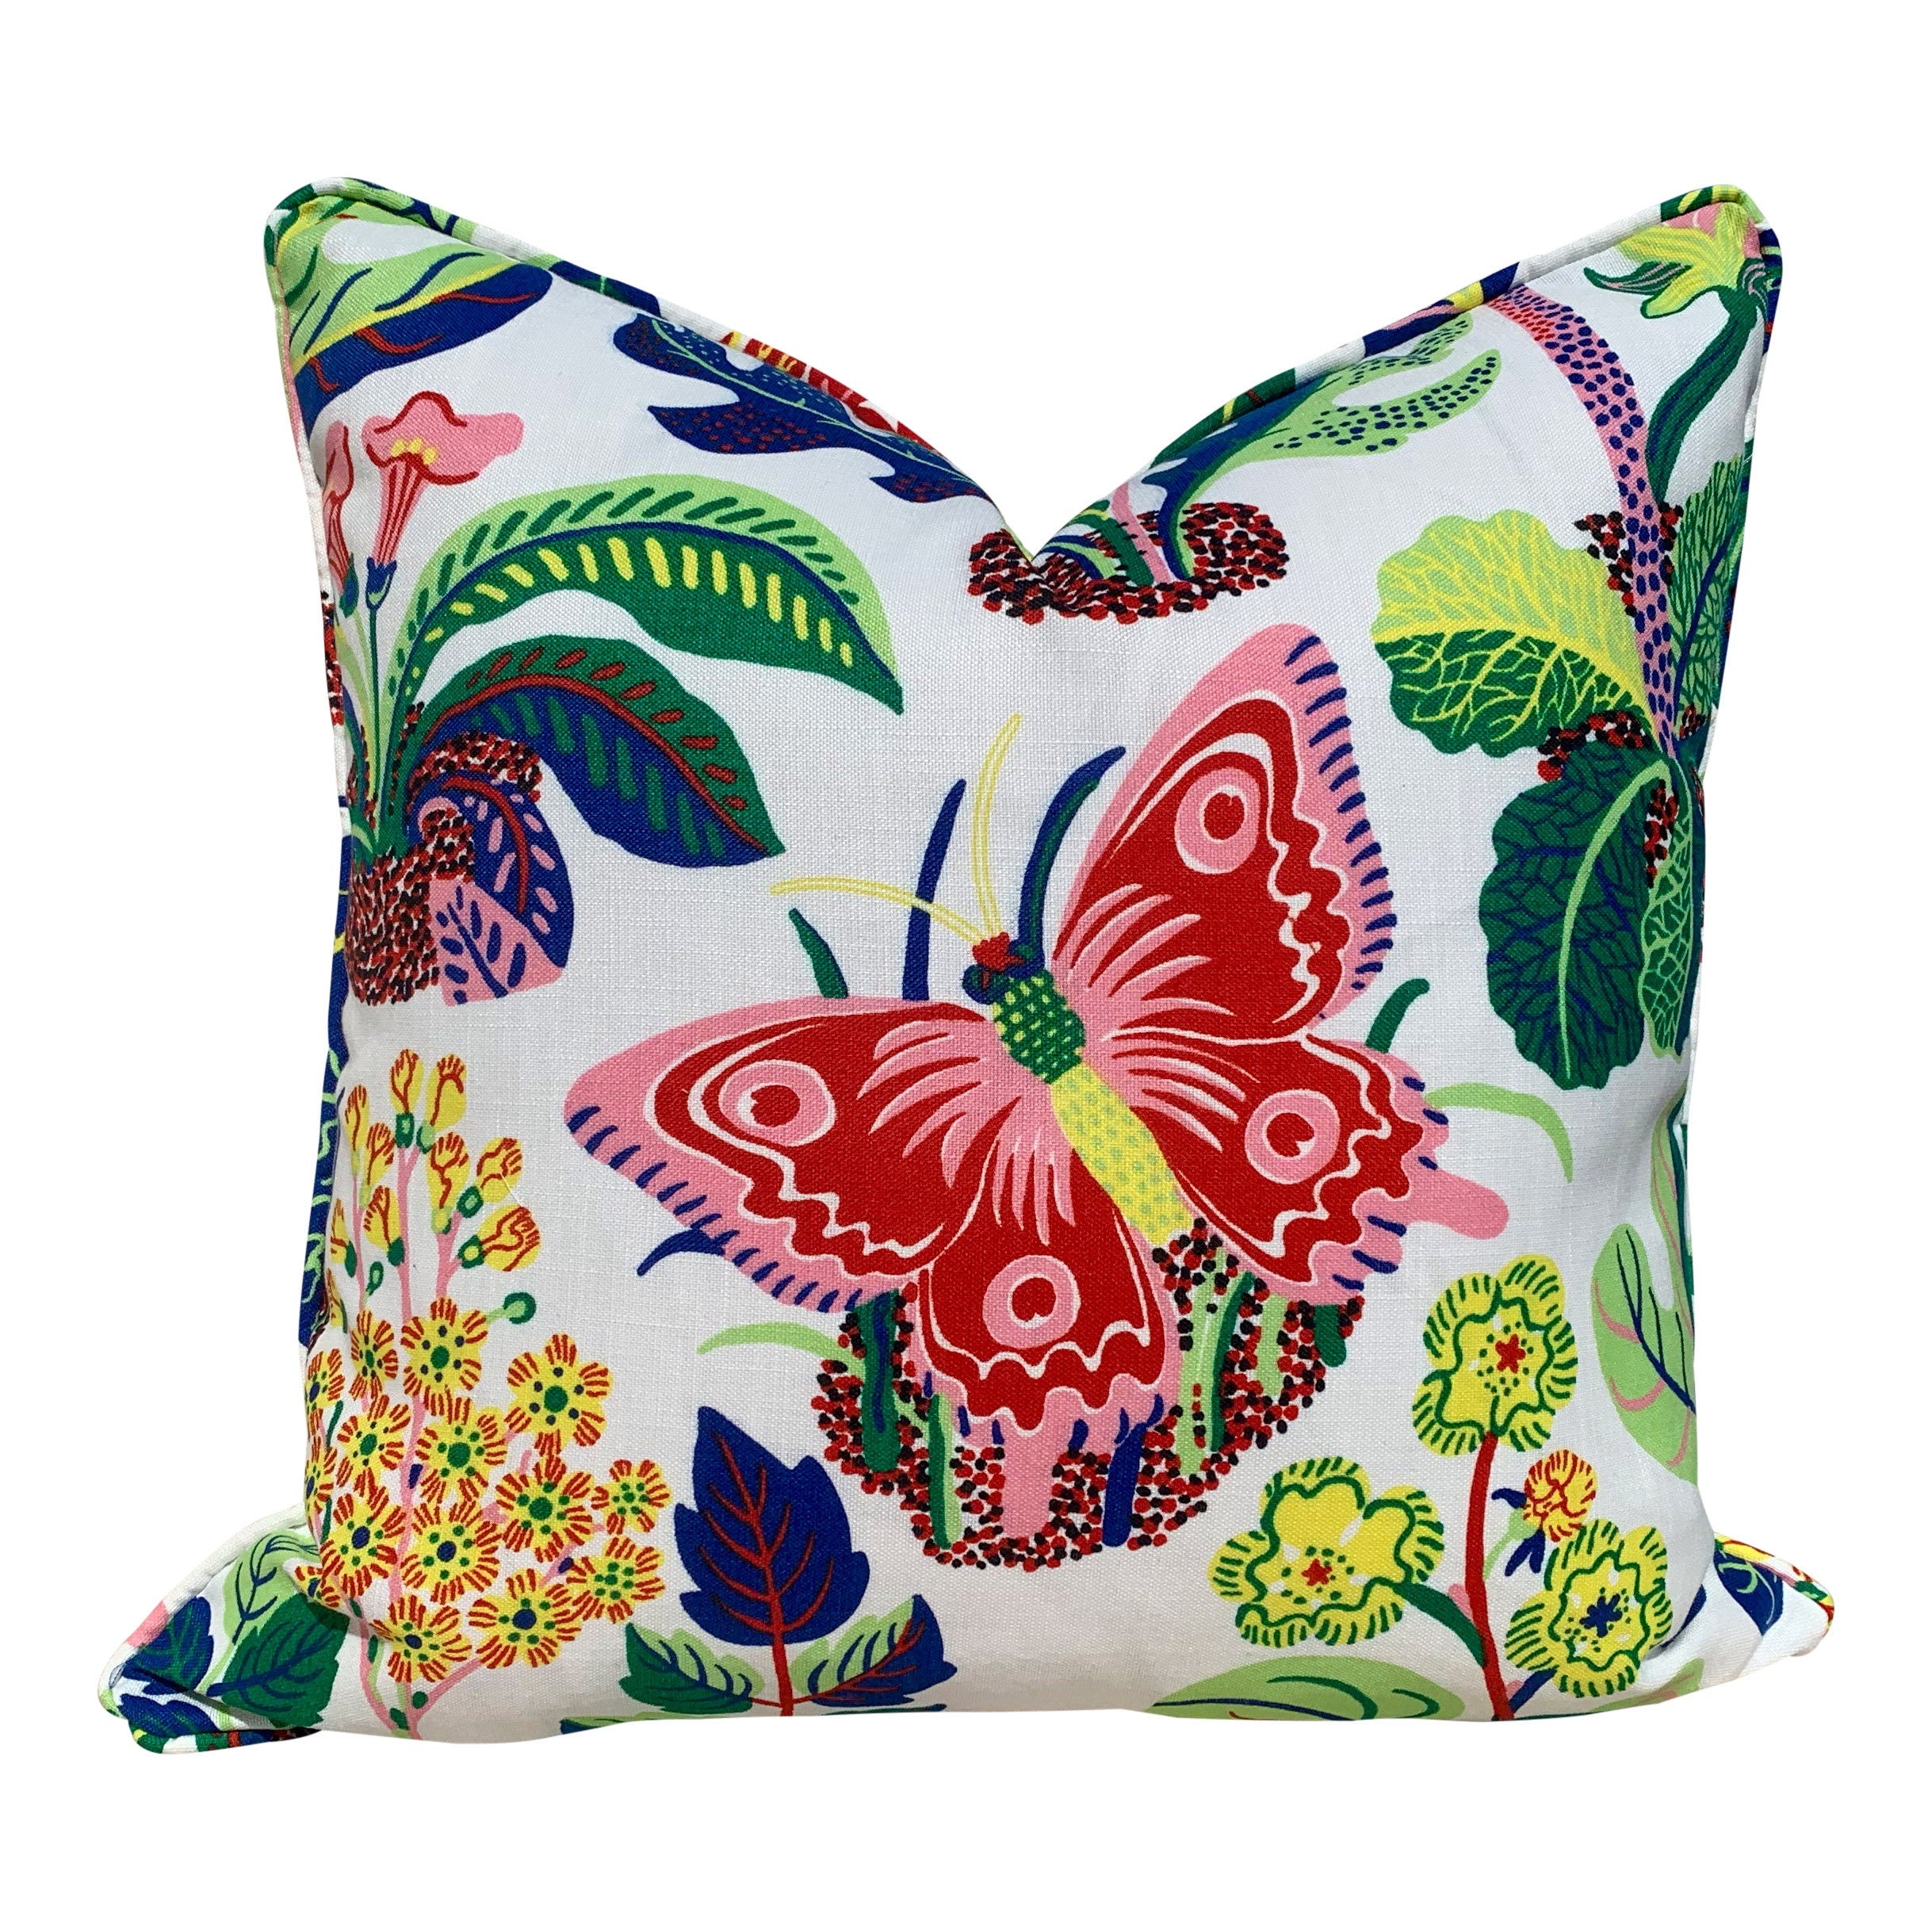 Outdoor Exotic Butterfly Pillow Pink Blue Green, Schumacher Floral Pillow Pink, Lumbar Butterfly Pillow, Multicolor Toss Throw, Josef Frank